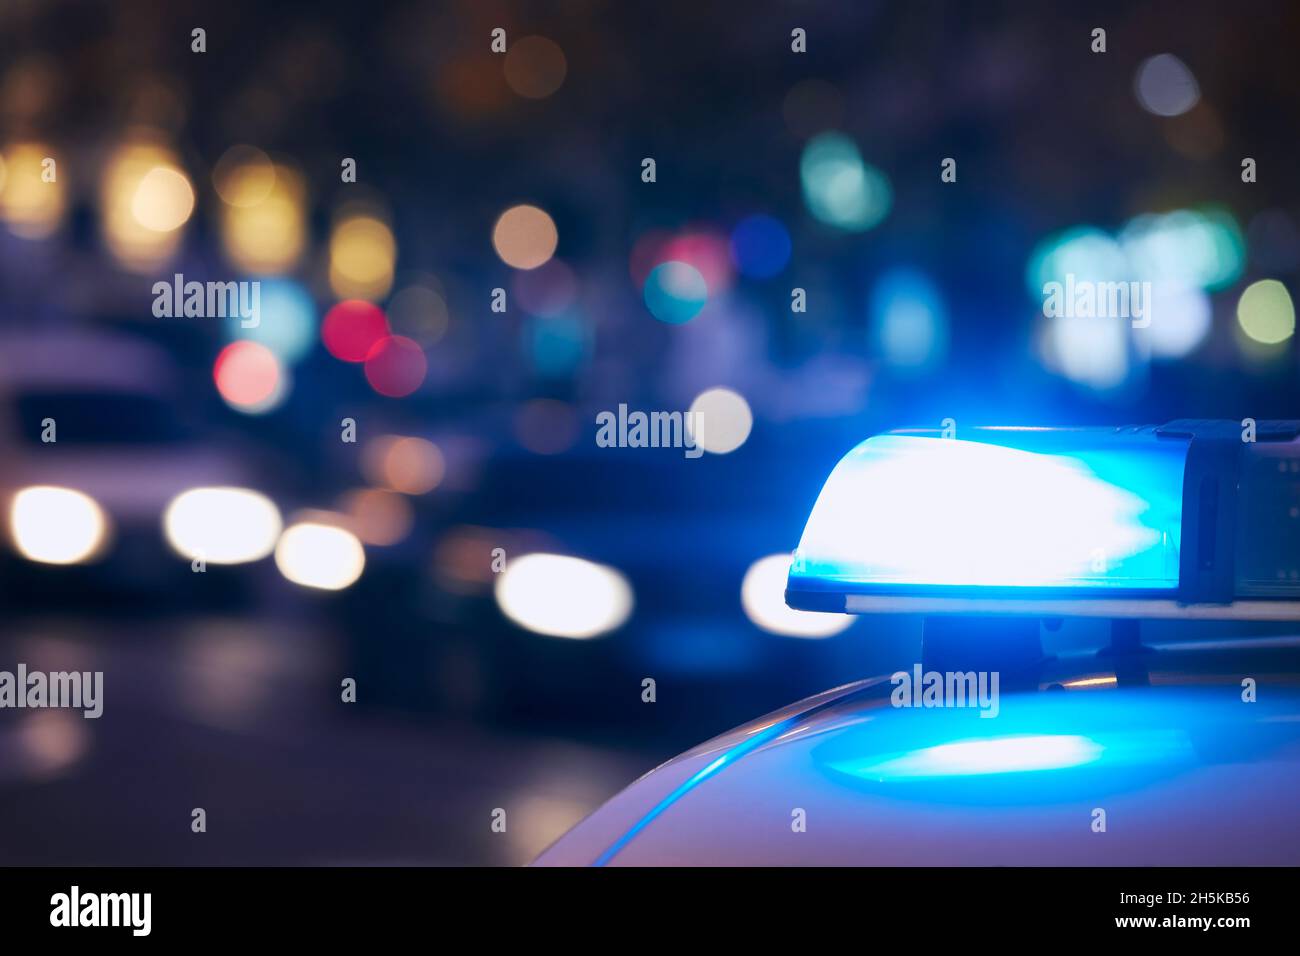 Lumière Bleue Sirène Police - Photo gratuite sur Pixabay - Pixabay